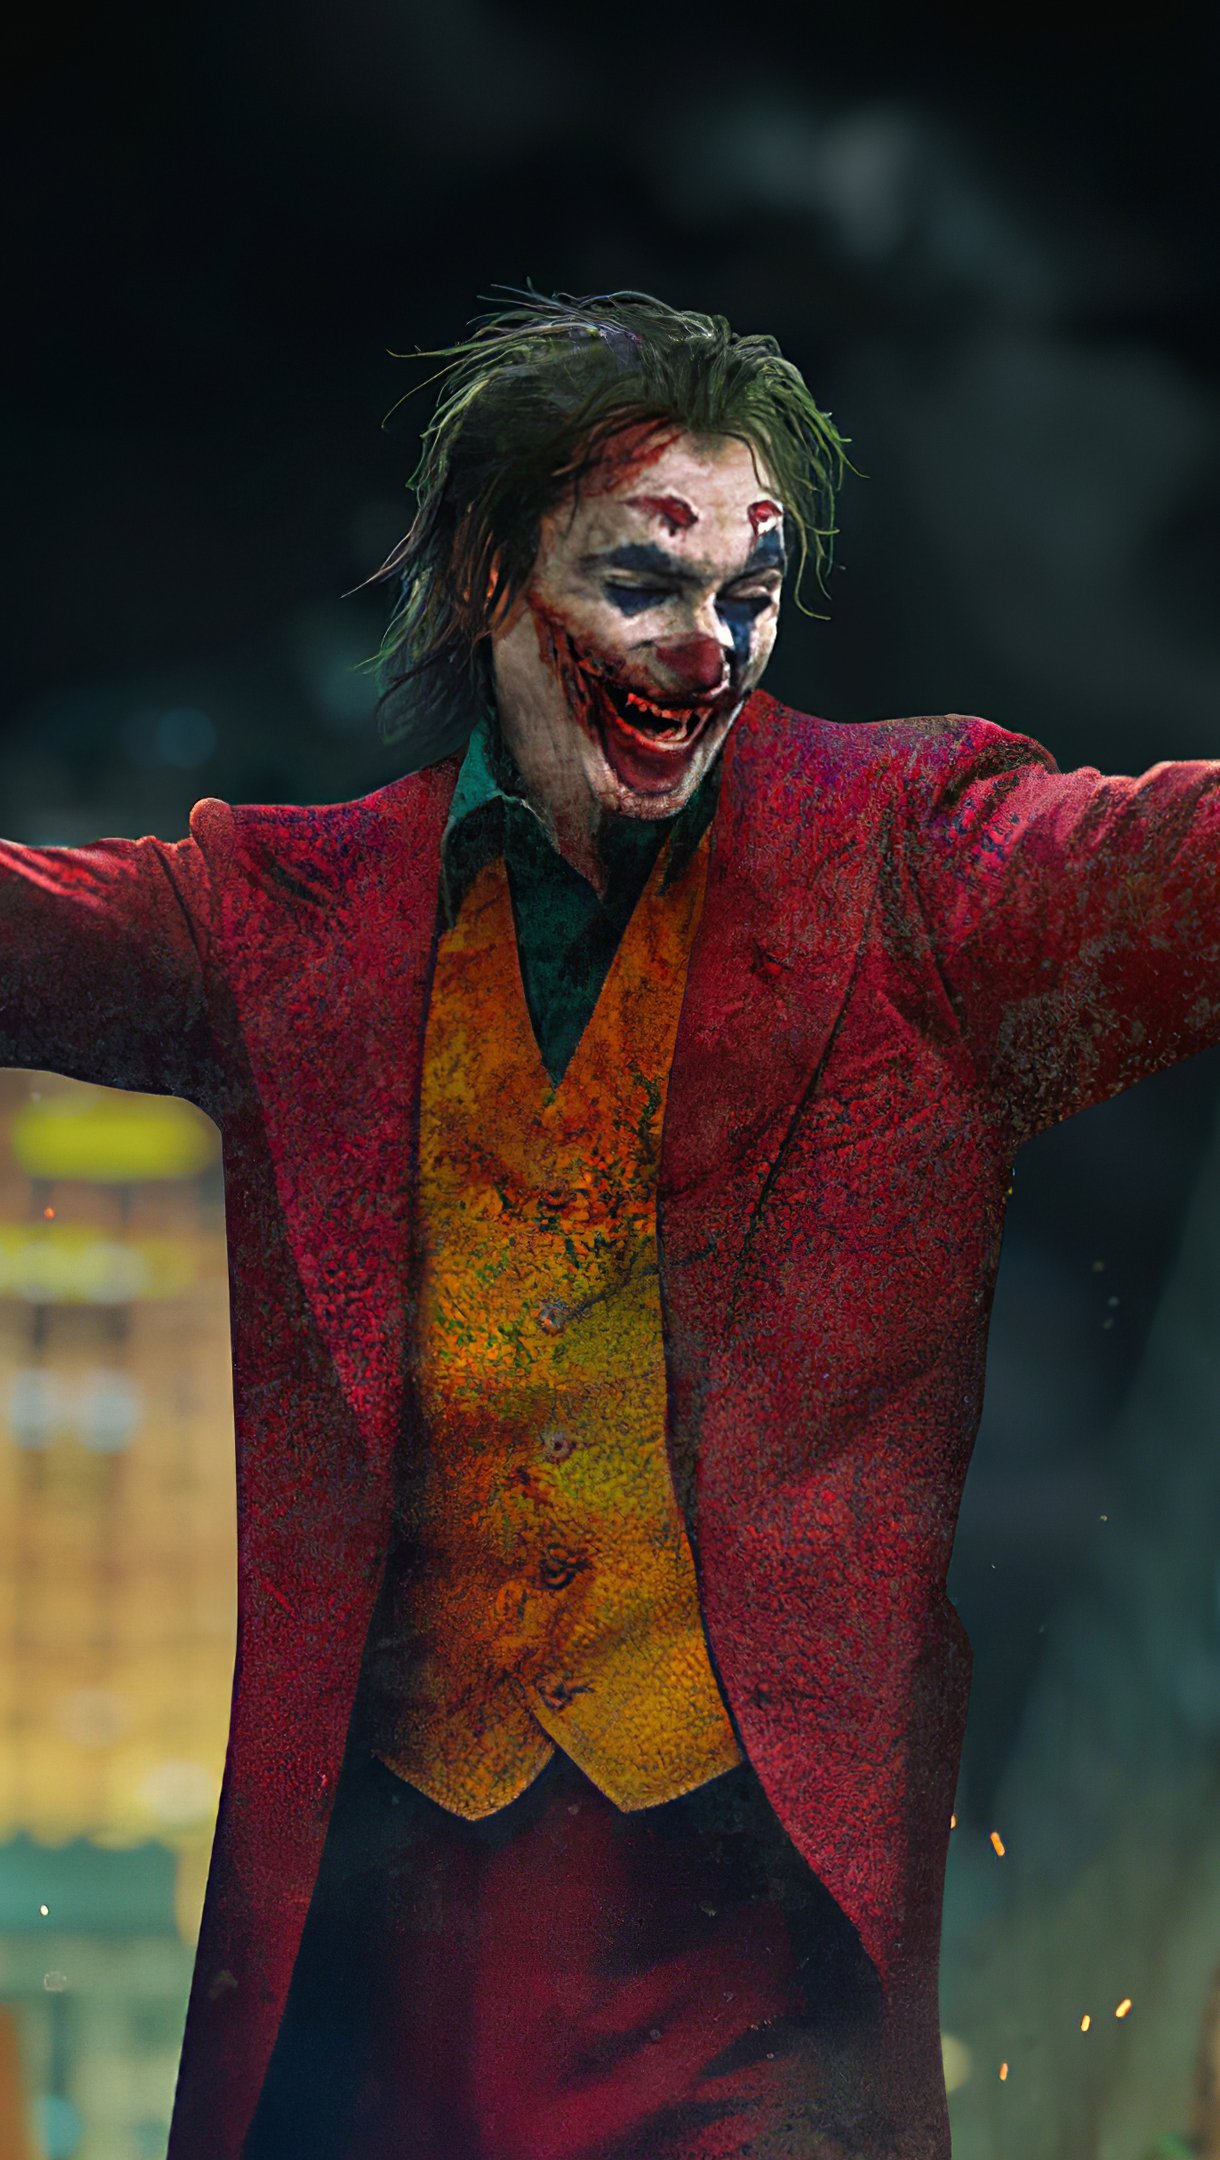 Wallpaper Joker with open arms Vertical